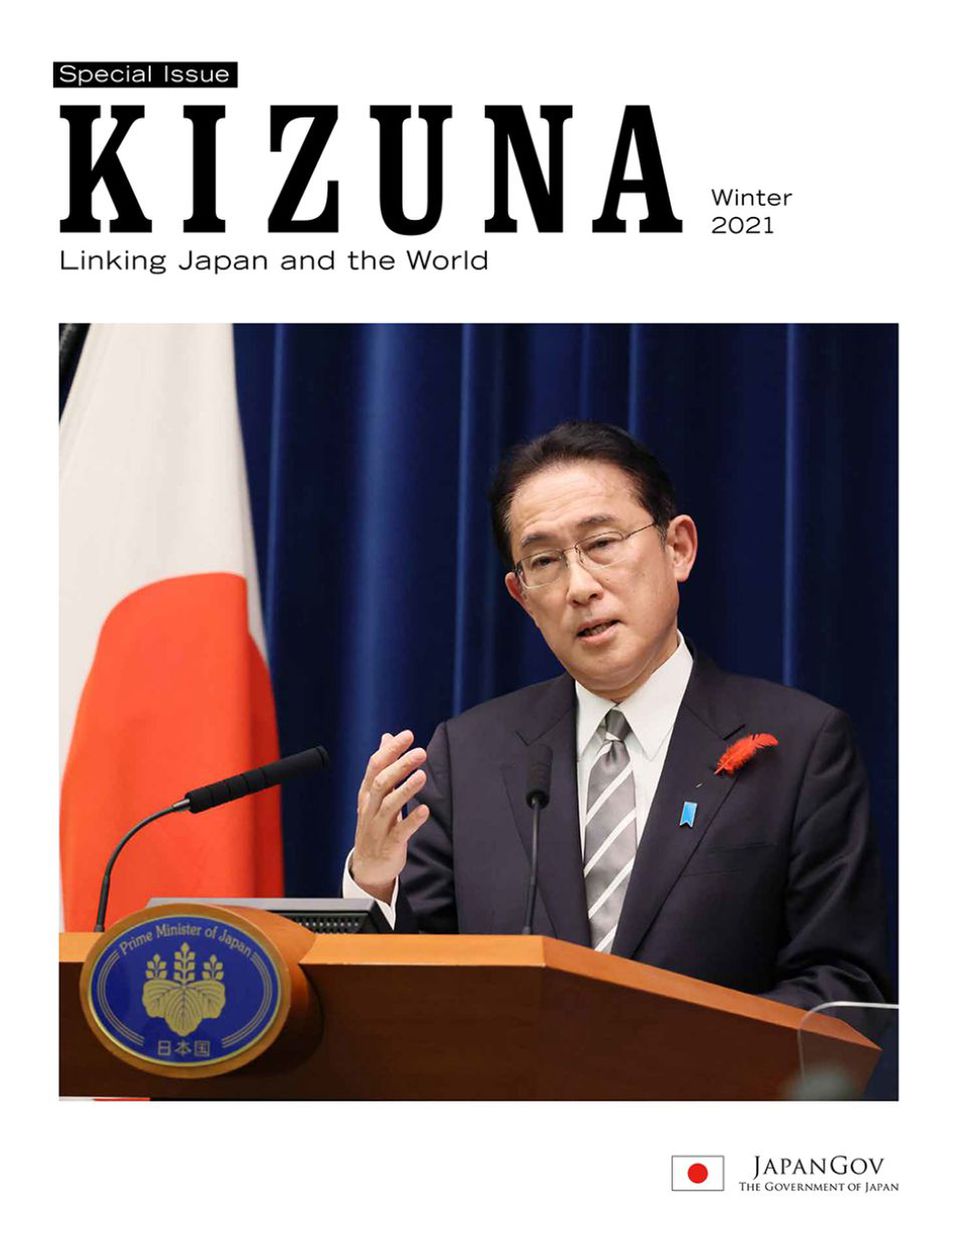 KIZUNA Winter 2021 Special Issue